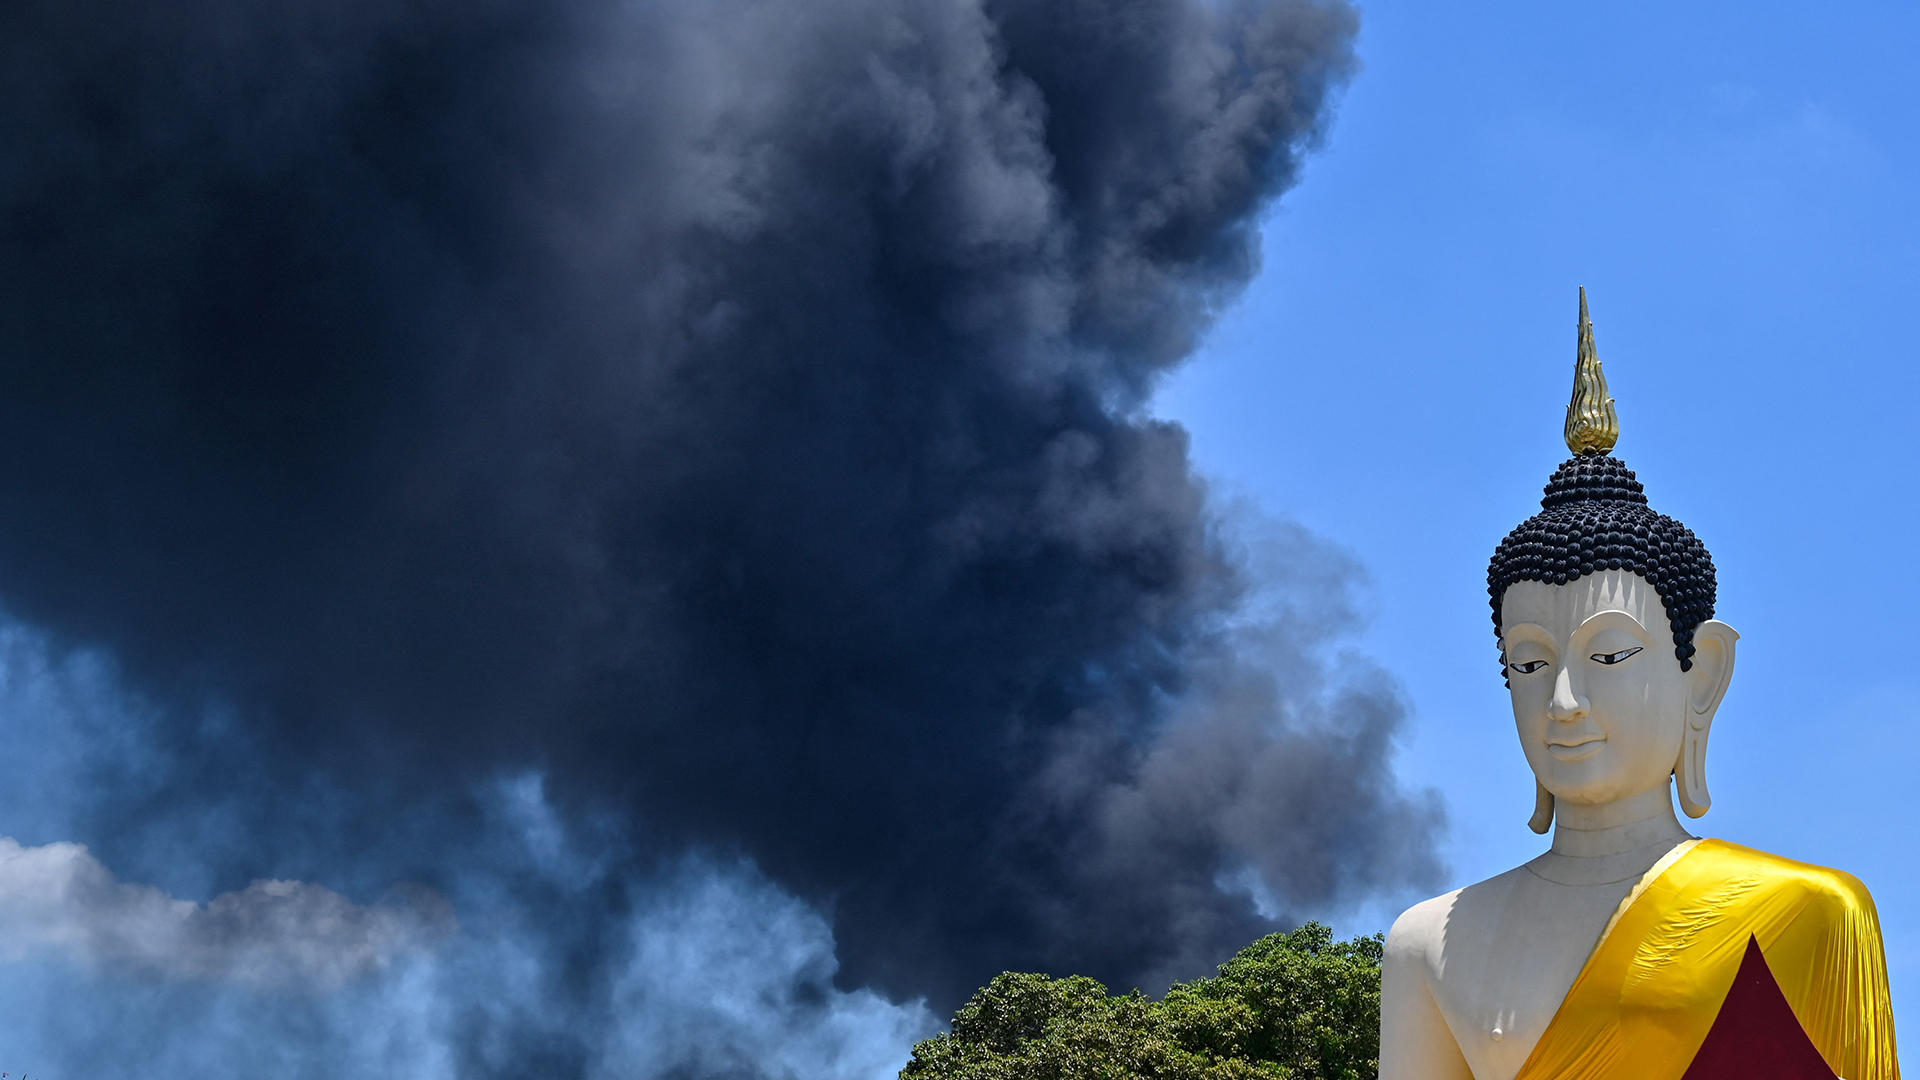 Dunkle Rauchwolke neben Buddha-Statue | AFP